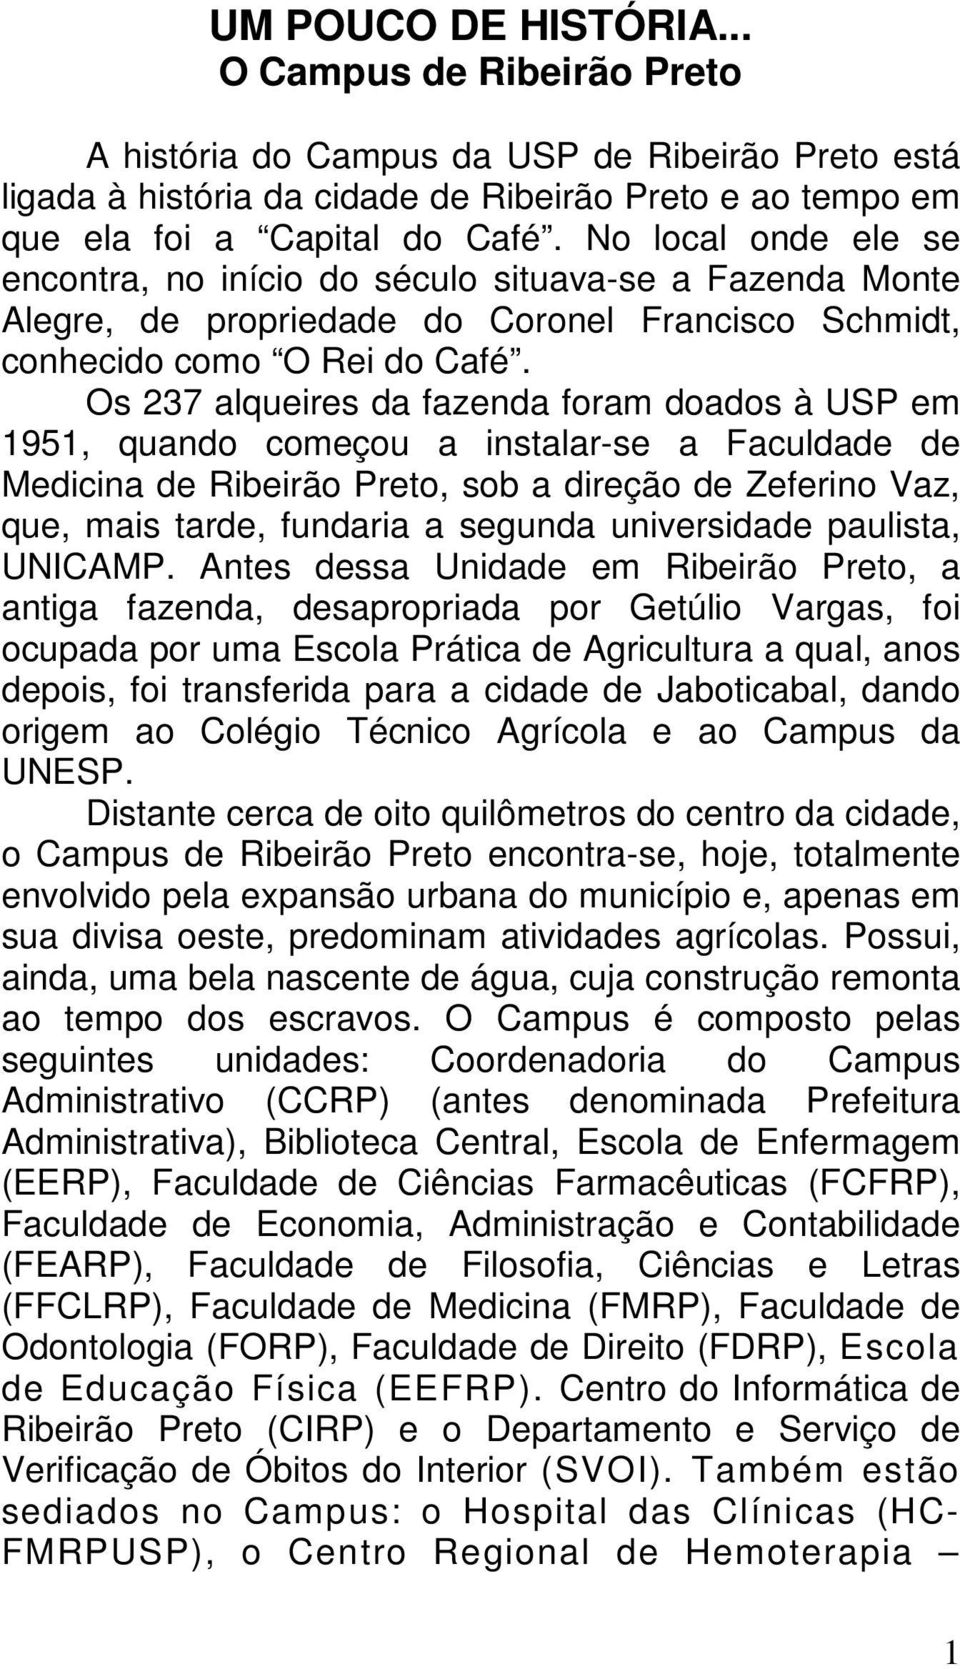 Os 237 alqueires da fazenda foram doados à USP em 1951, quando começou a instalar-se a Faculdade de Medicina de Ribeirão Preto, sob a direção de Zeferino Vaz, que, mais tarde, fundaria a segunda